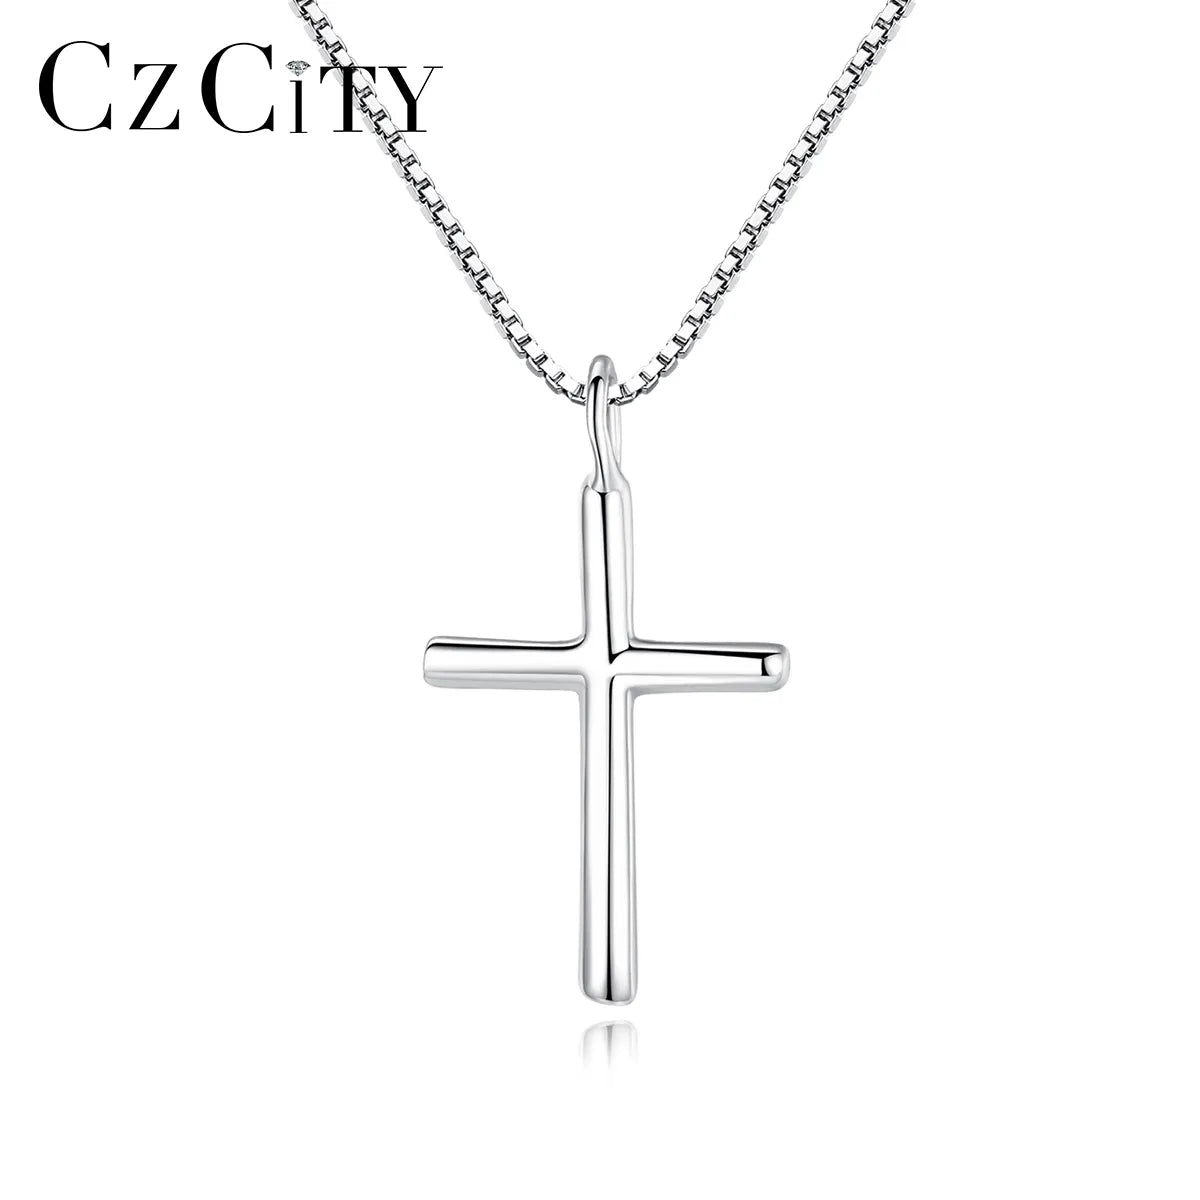 Czcity 925 Original Silver Cross Pendant Necklace Trendy Punk Fashion Men And Women Box Chian Necklaces Hip Hop Delicate Jewelry